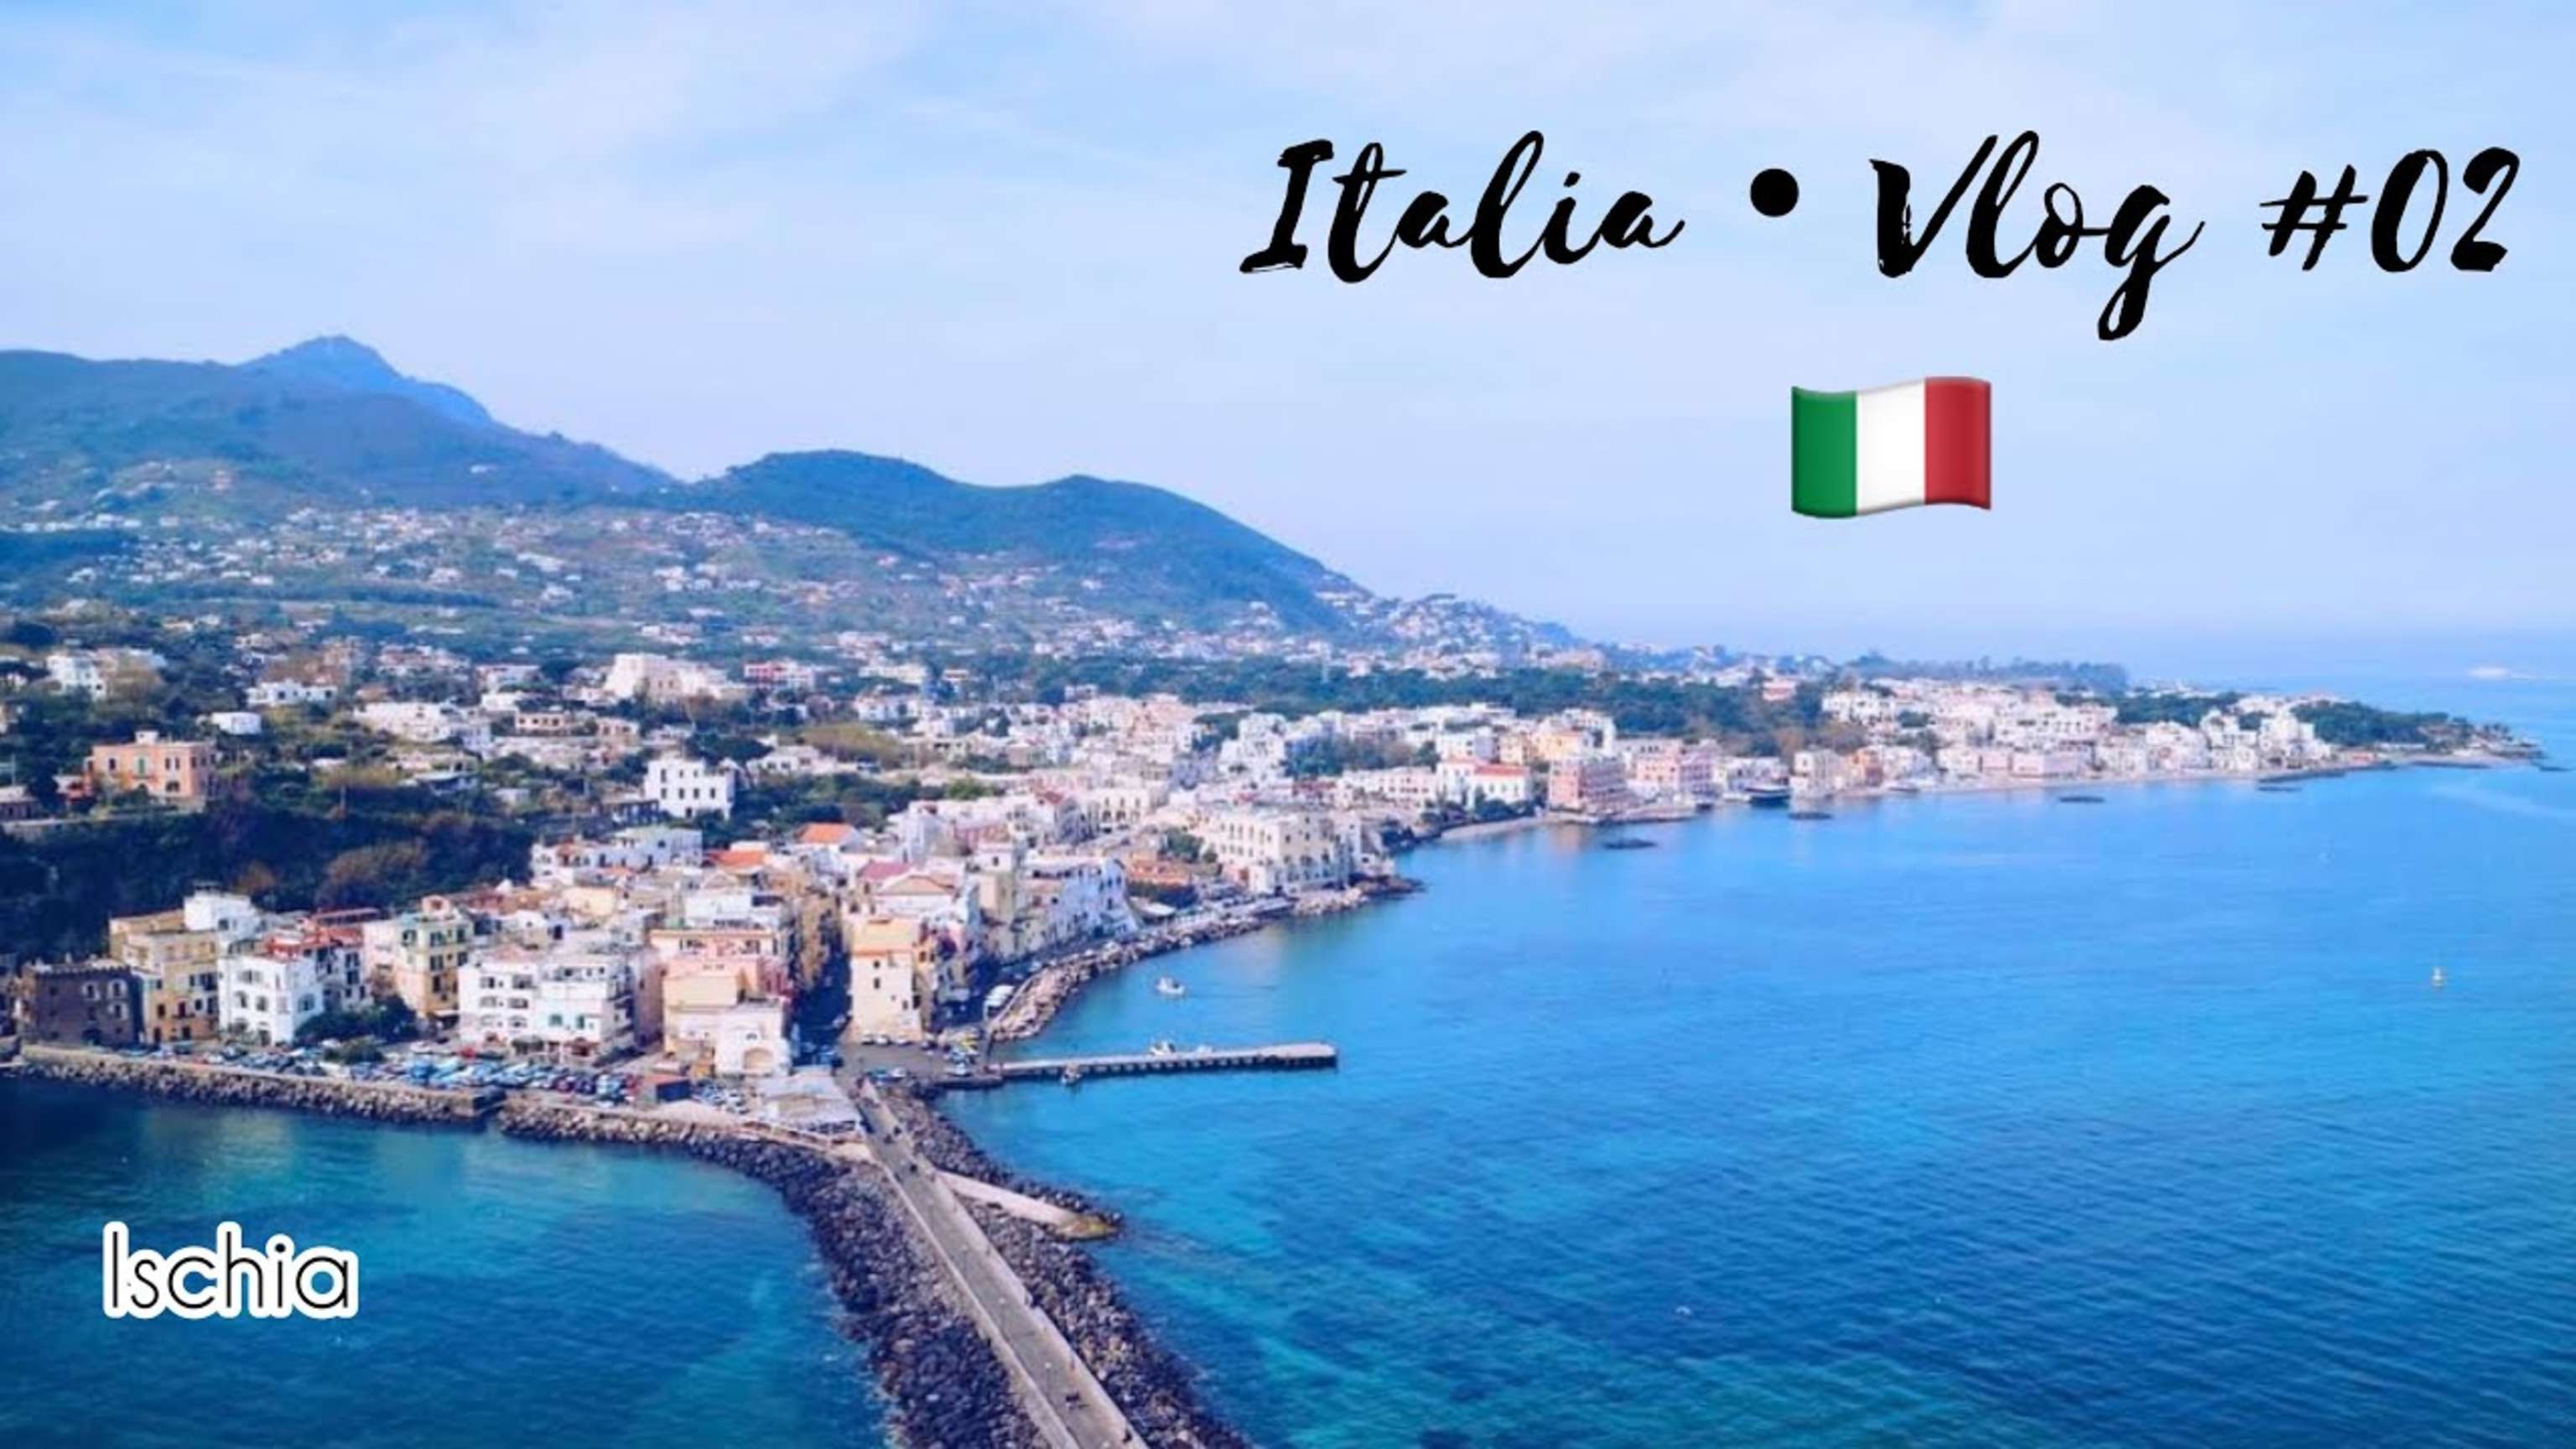 Un día en la isla de Ischia 🇮🇹 | ITALIA VLOGS #02